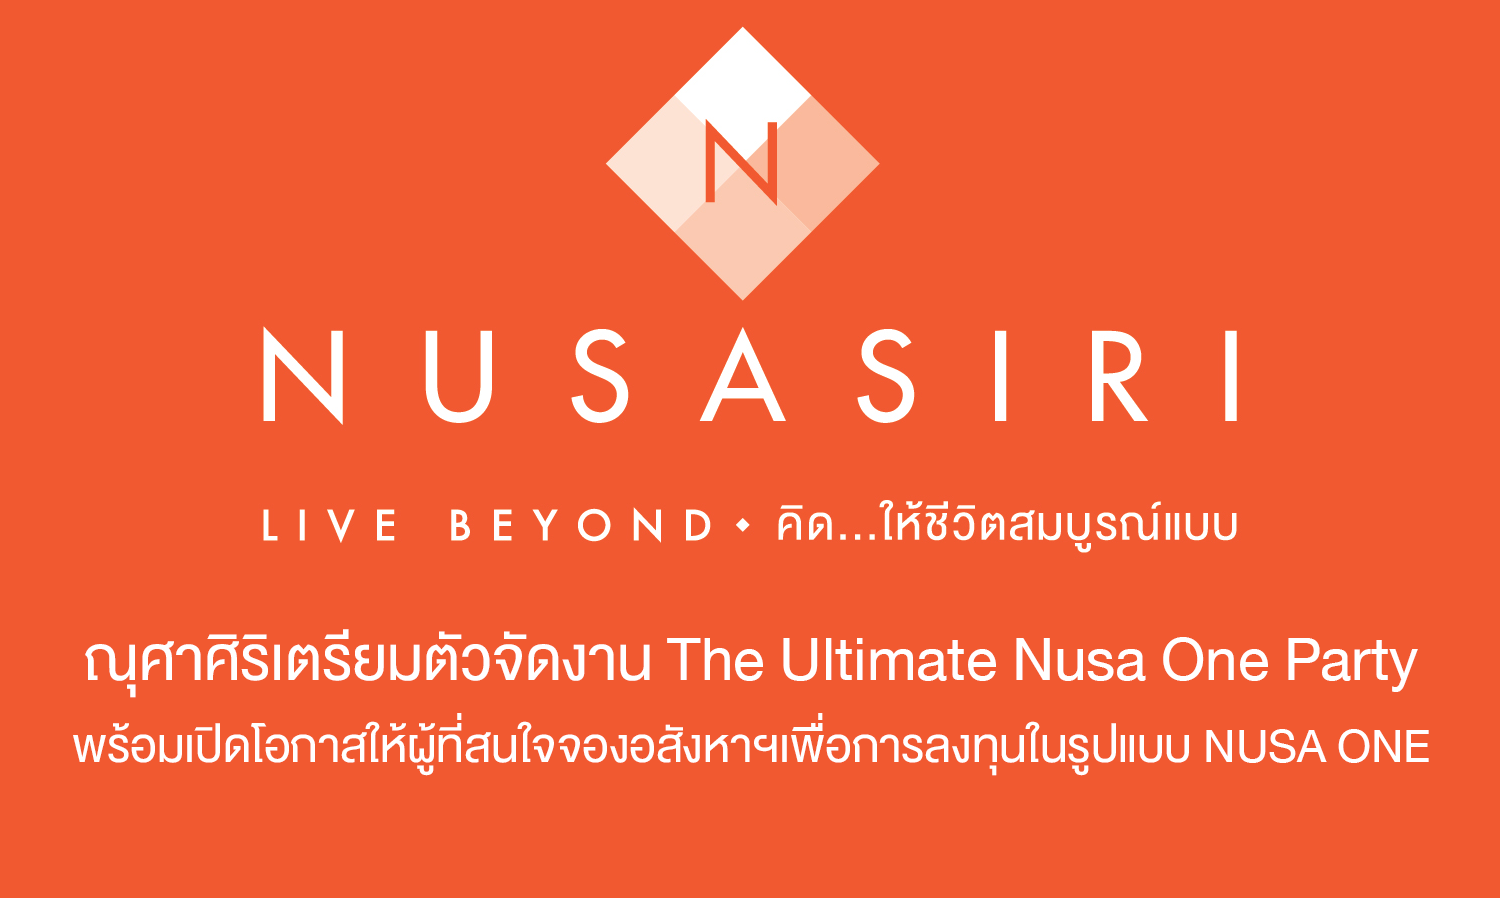 ณุศาศิริเตรียมตัวจัดงาน The Ultimate Nusa One Party พร้อมเปิดโอกาสให้ผู้ที่สนใจจองอสังหาฯเพื่อการลงทุนในรูปแบบ NUSA ONE